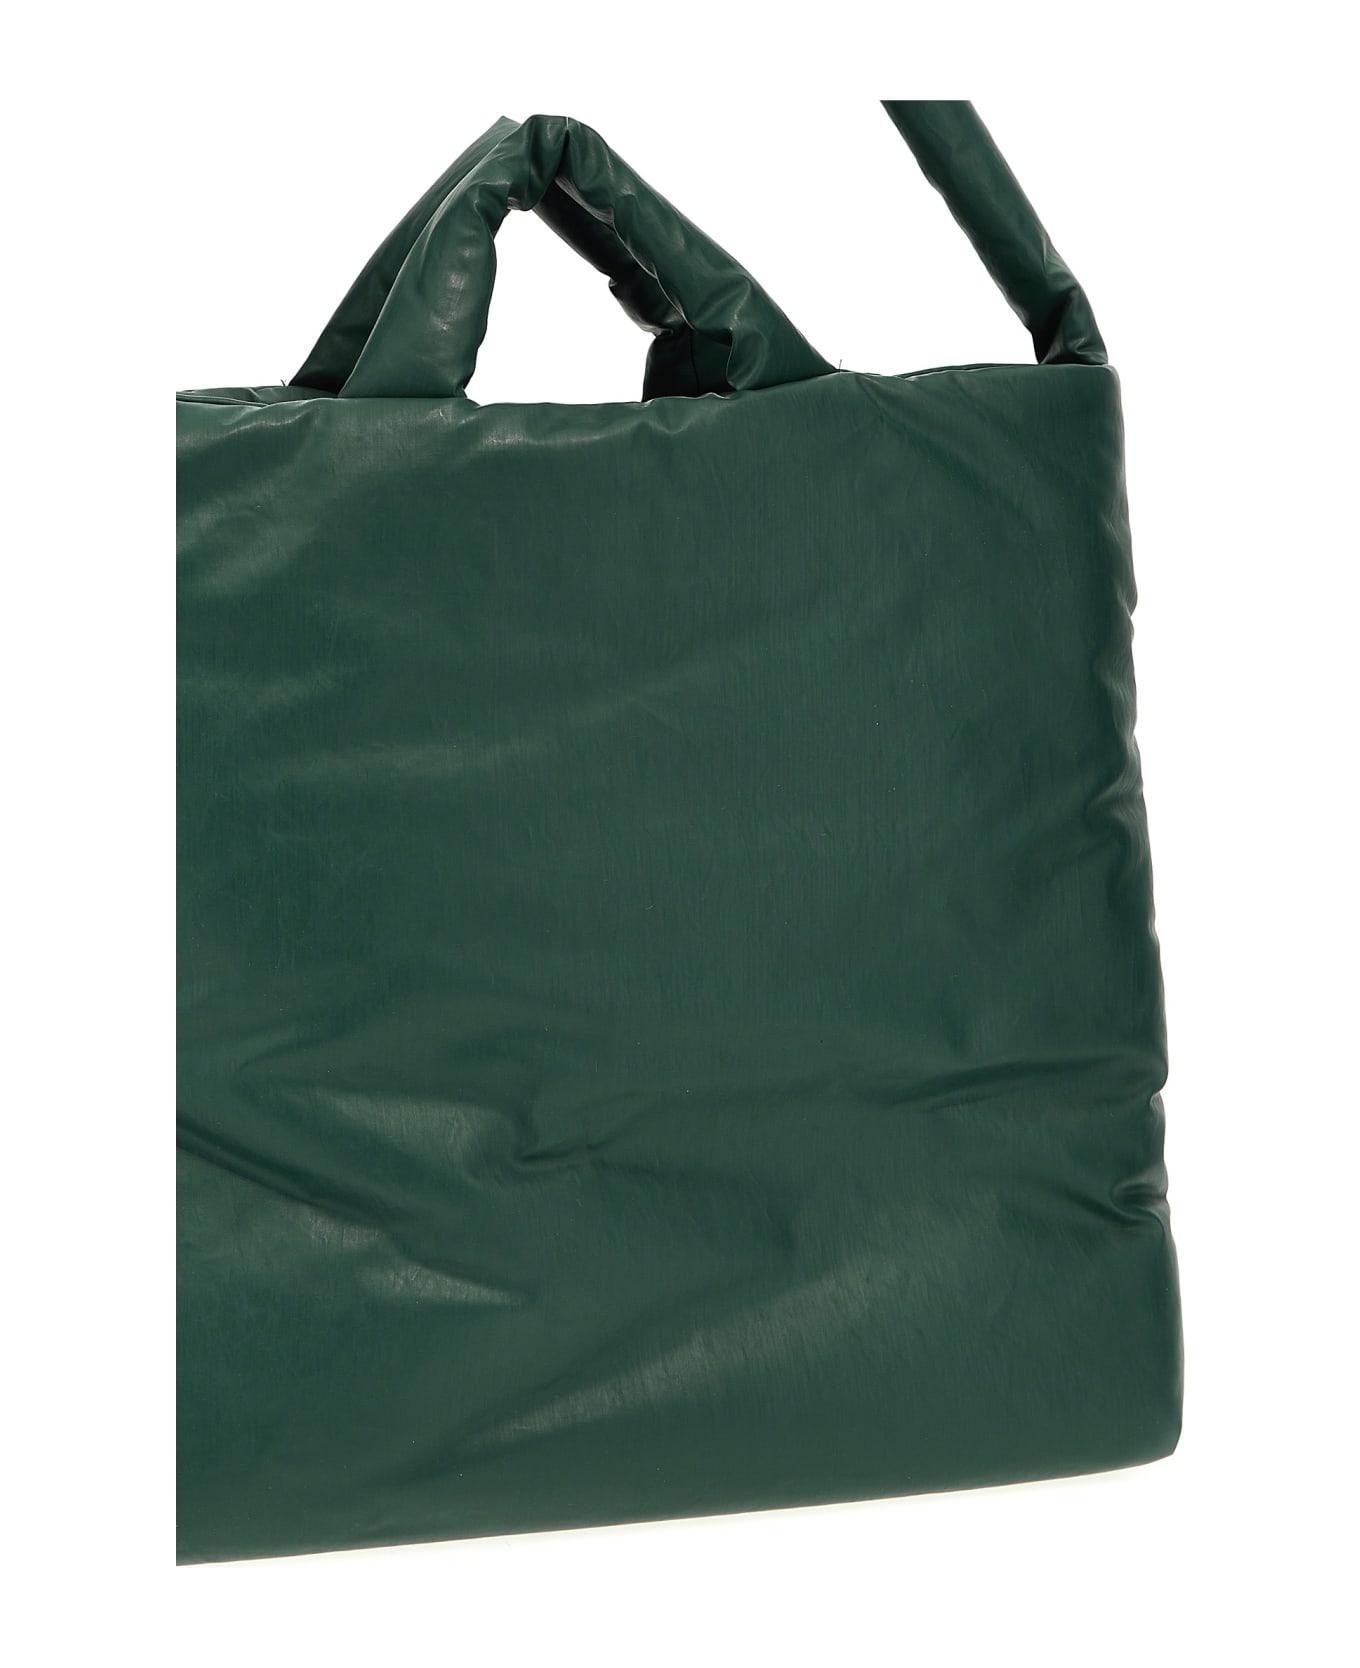 KASSL Editions 'pillow Medium' Shopping Bag - Green